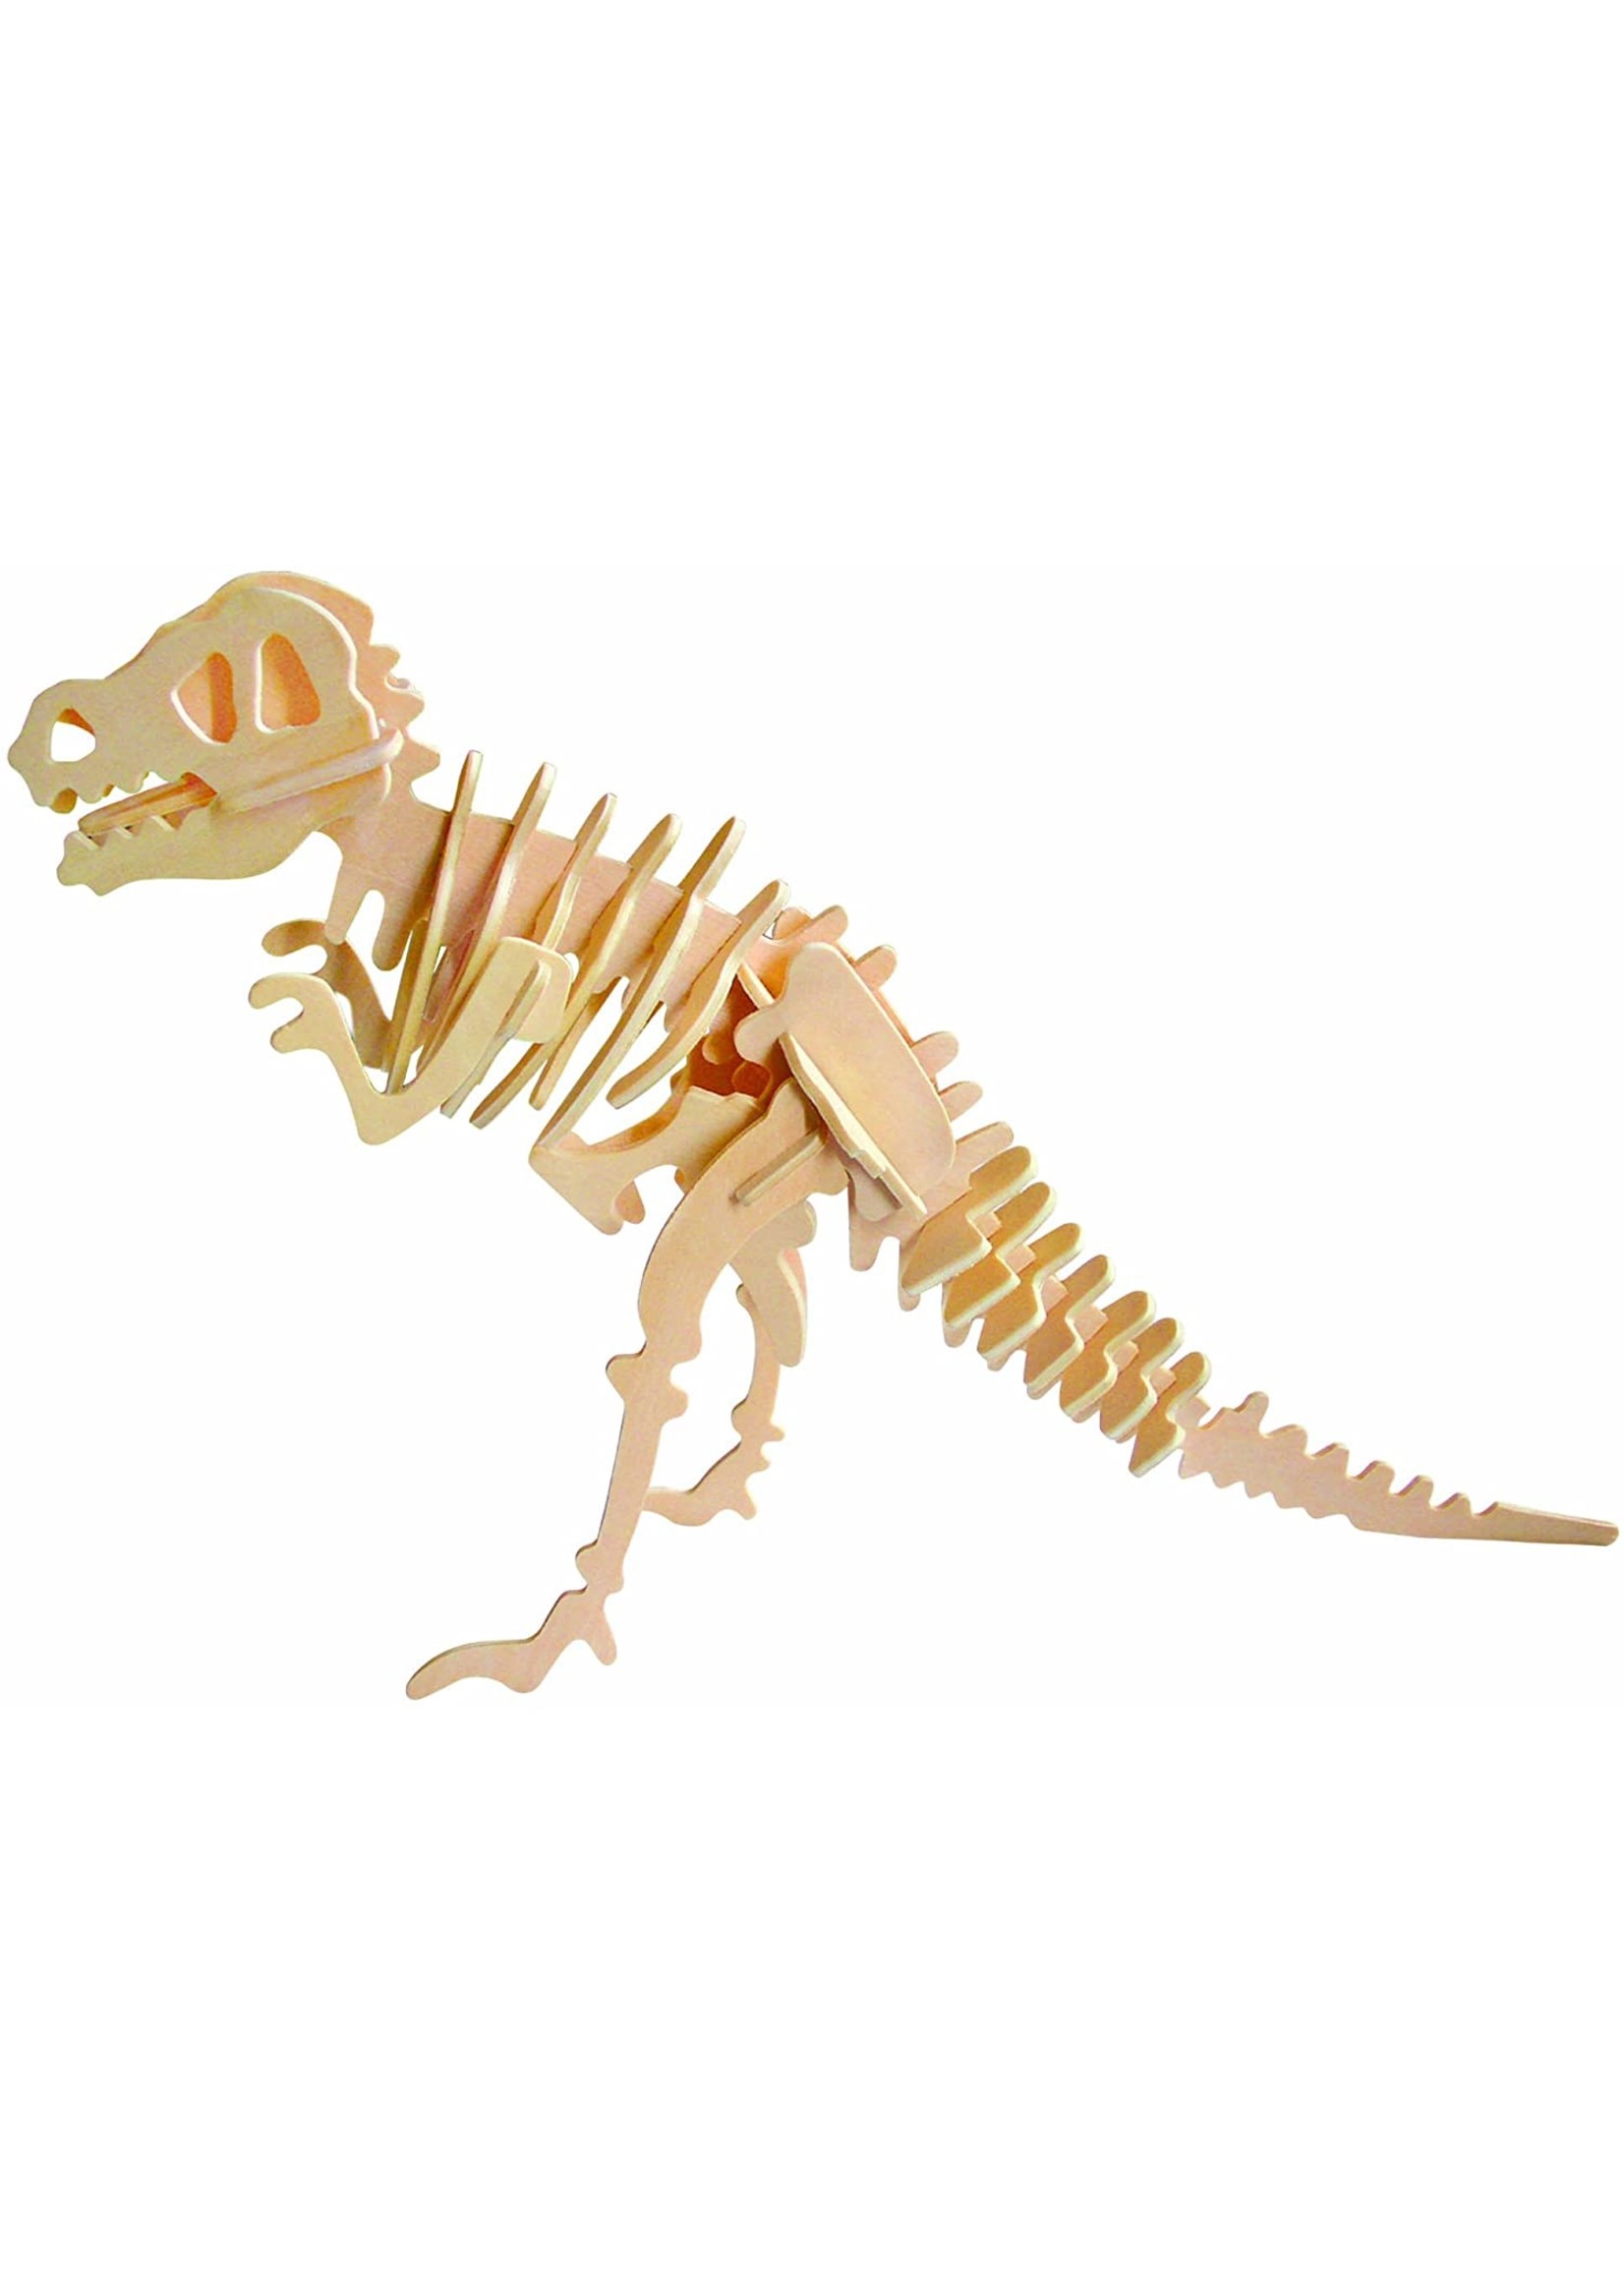 Velociraptor Dinosaur Model Kits Build 3D Metal Puzzle Toys for Kids